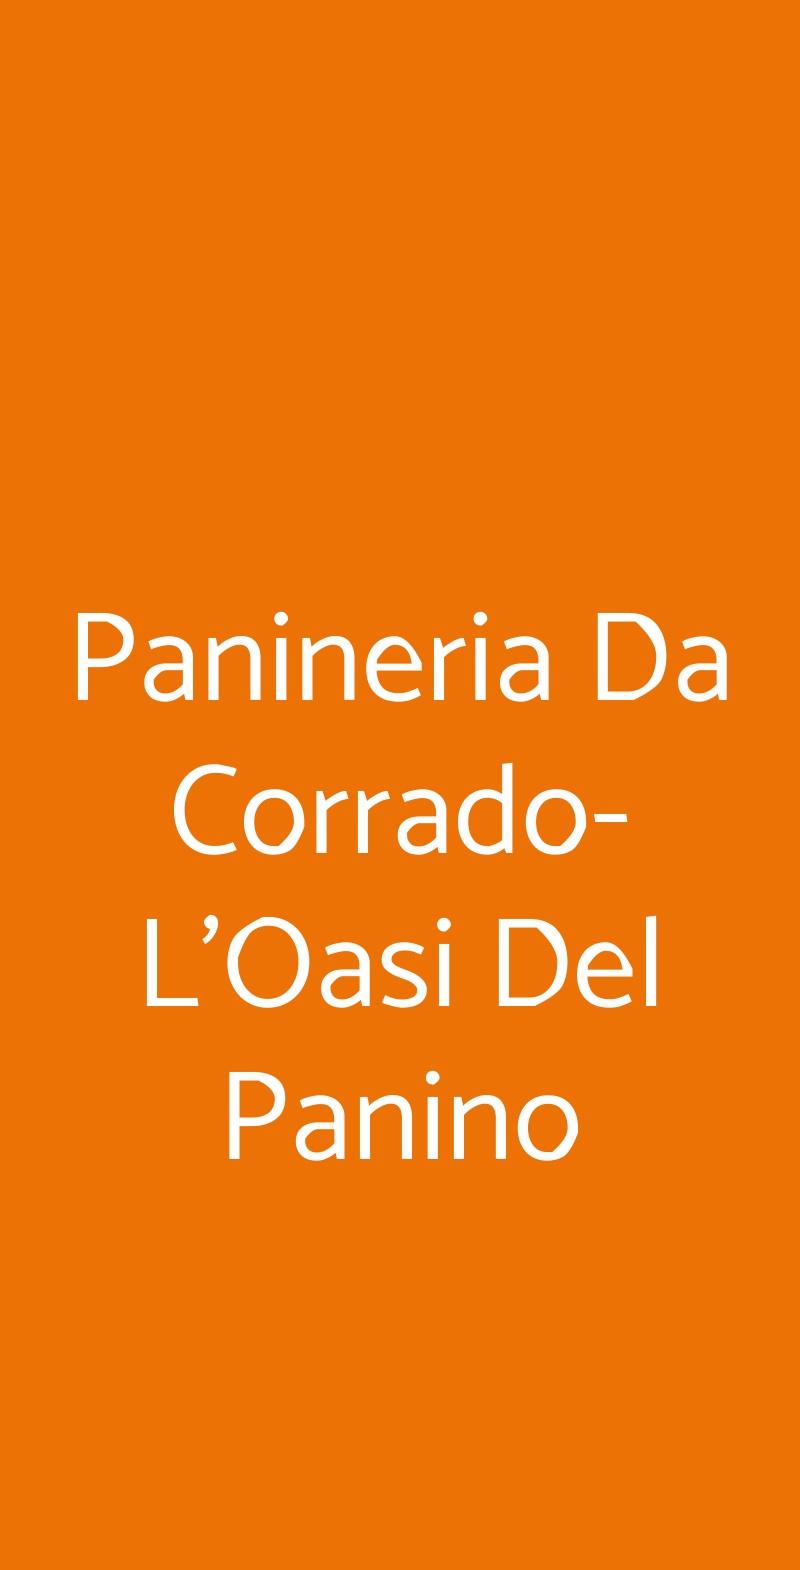 Panineria Da Corrado-L'Oasi Del Panino Misterbianco menù 1 pagina